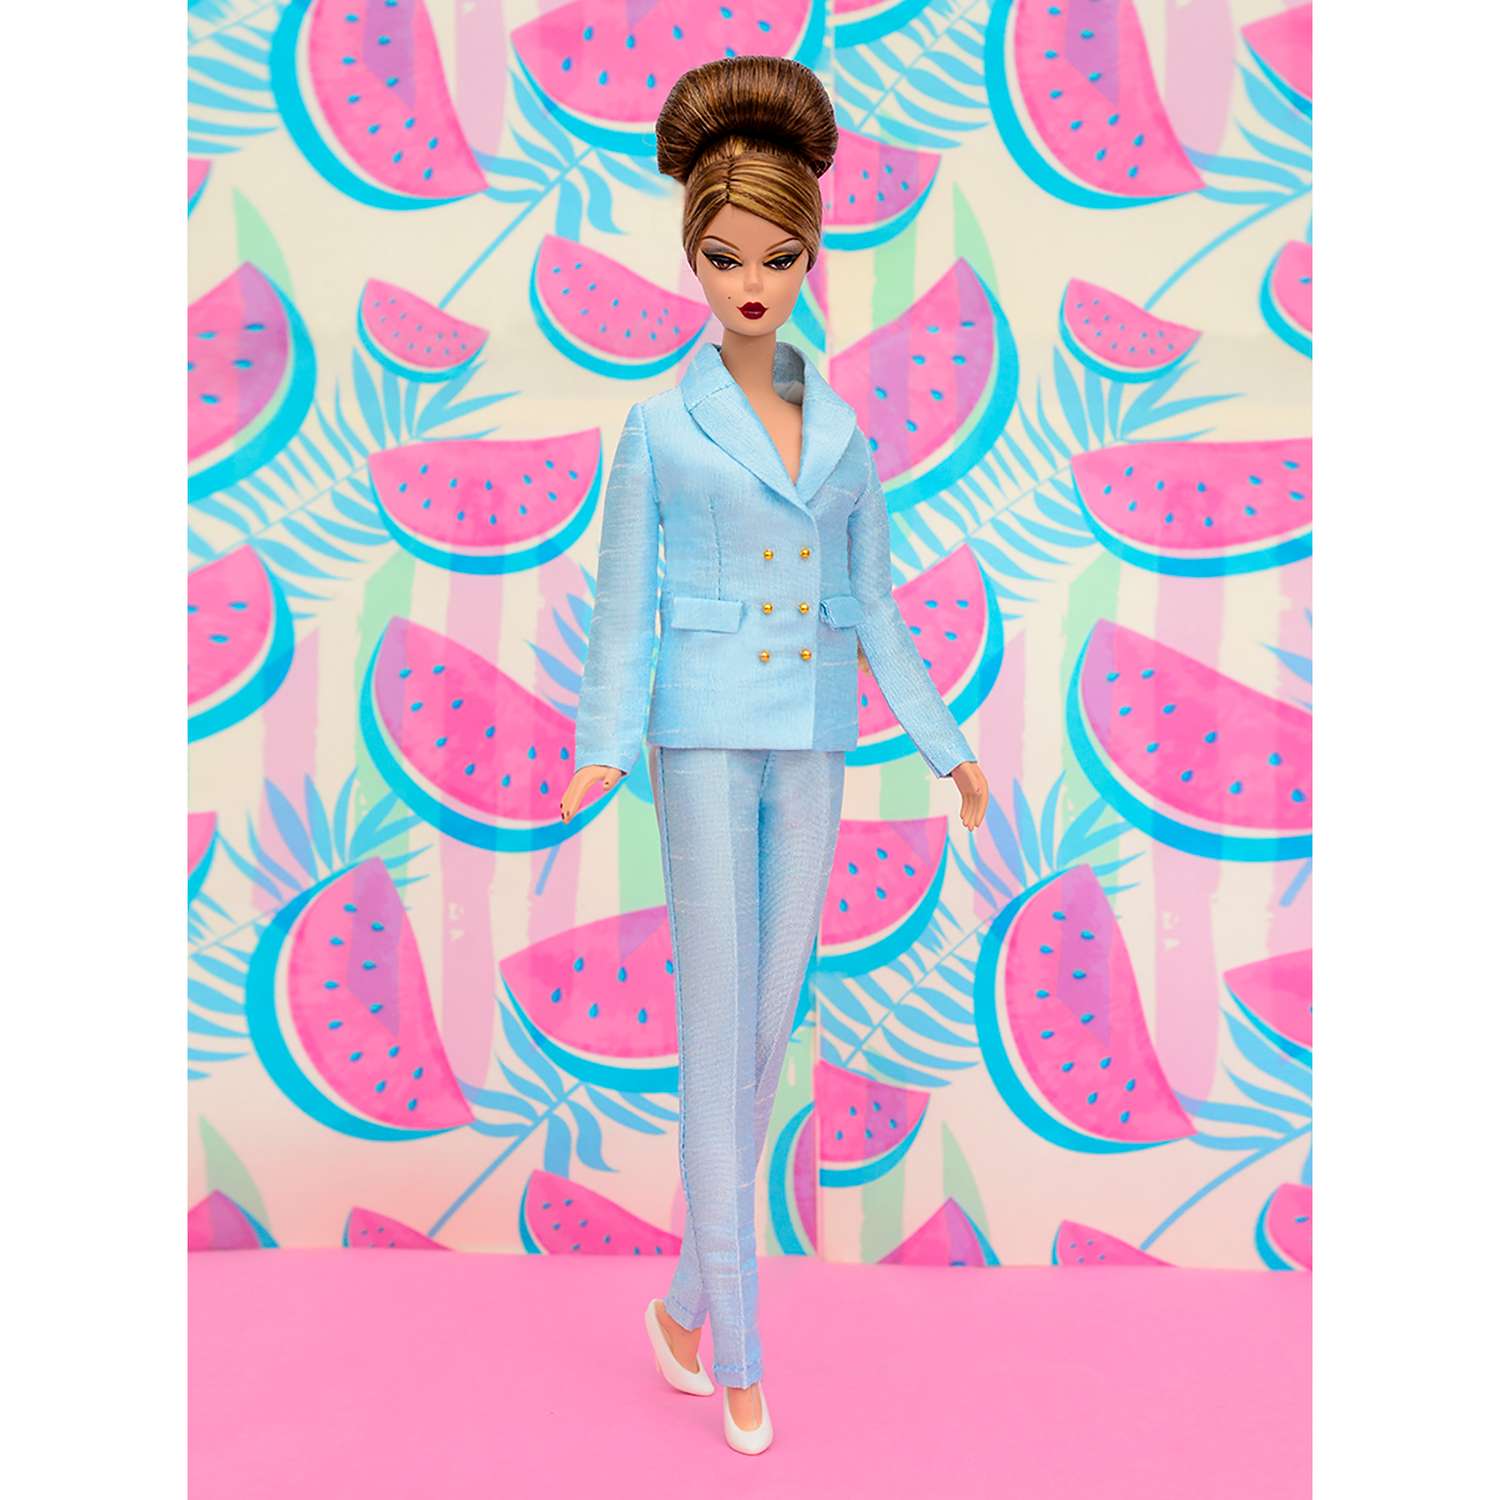 Шелковый брючный костюм Эленприв Небесно-голубой для куклы 29 см типа Барби FA-011-15 - фото 8